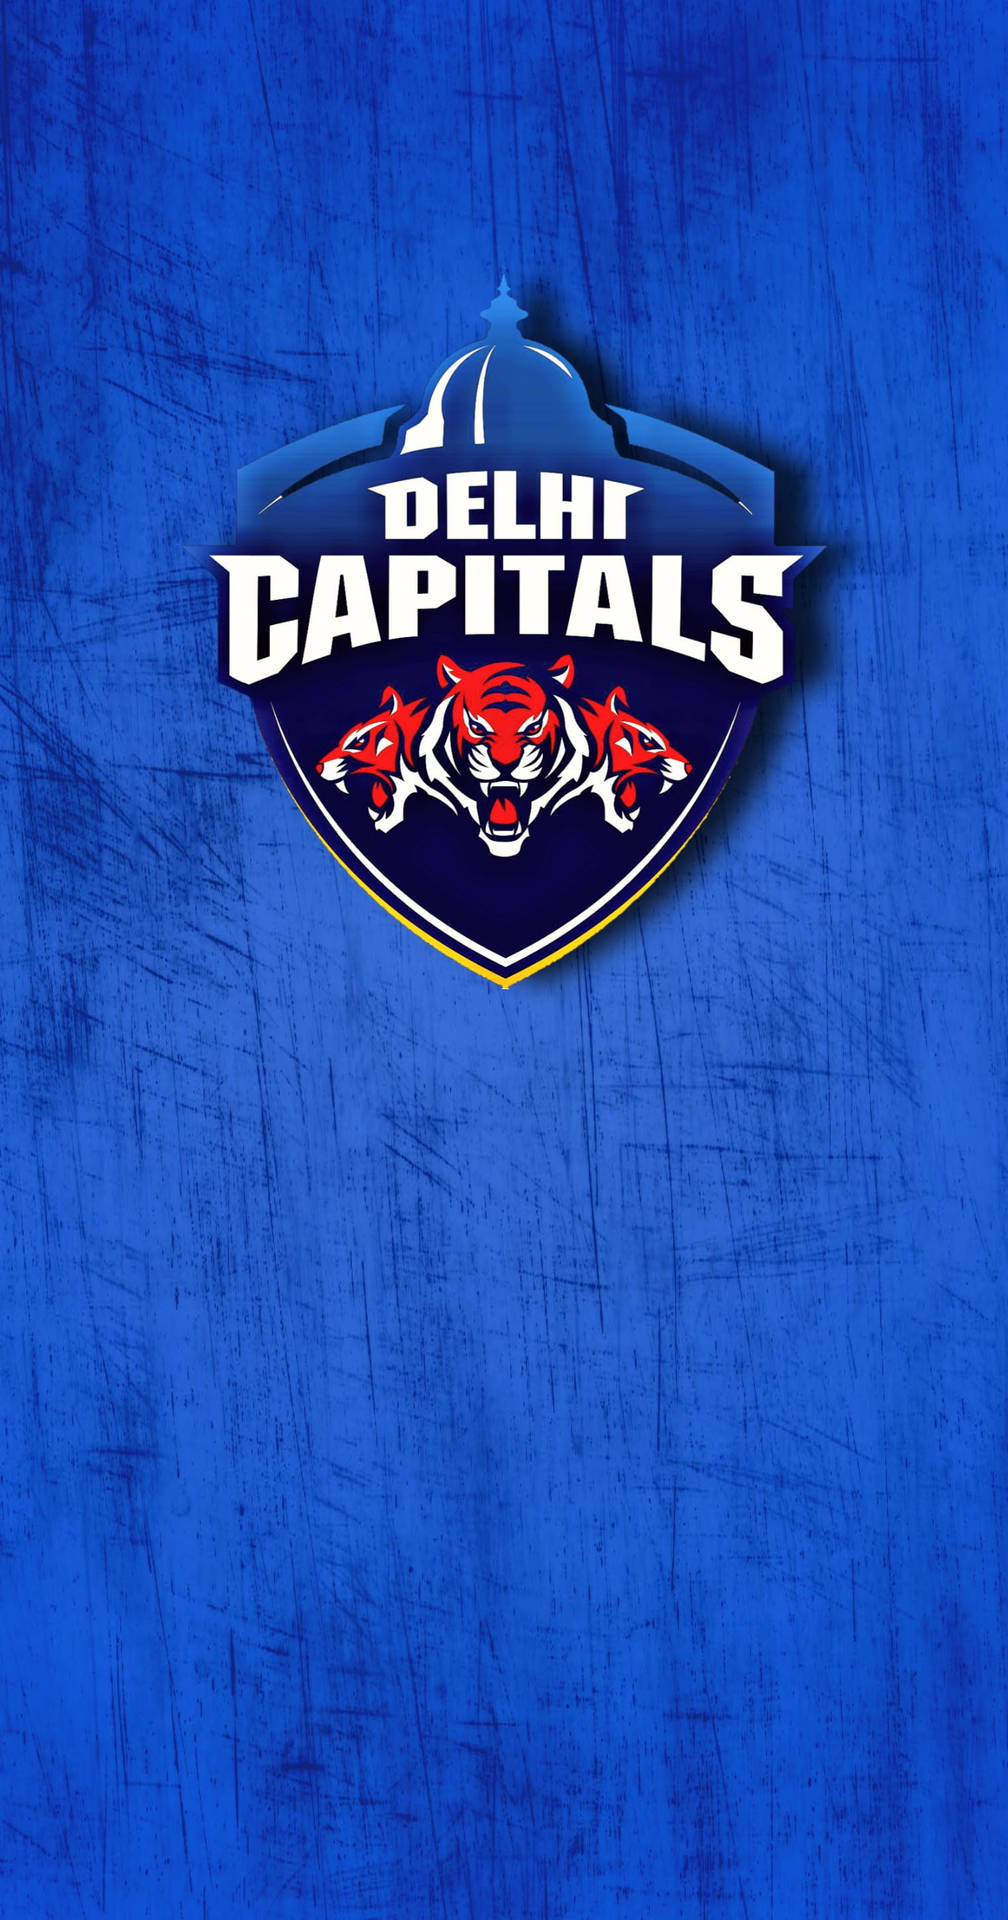 Power and Passion - The Delhi Capitals Logo Wallpaper